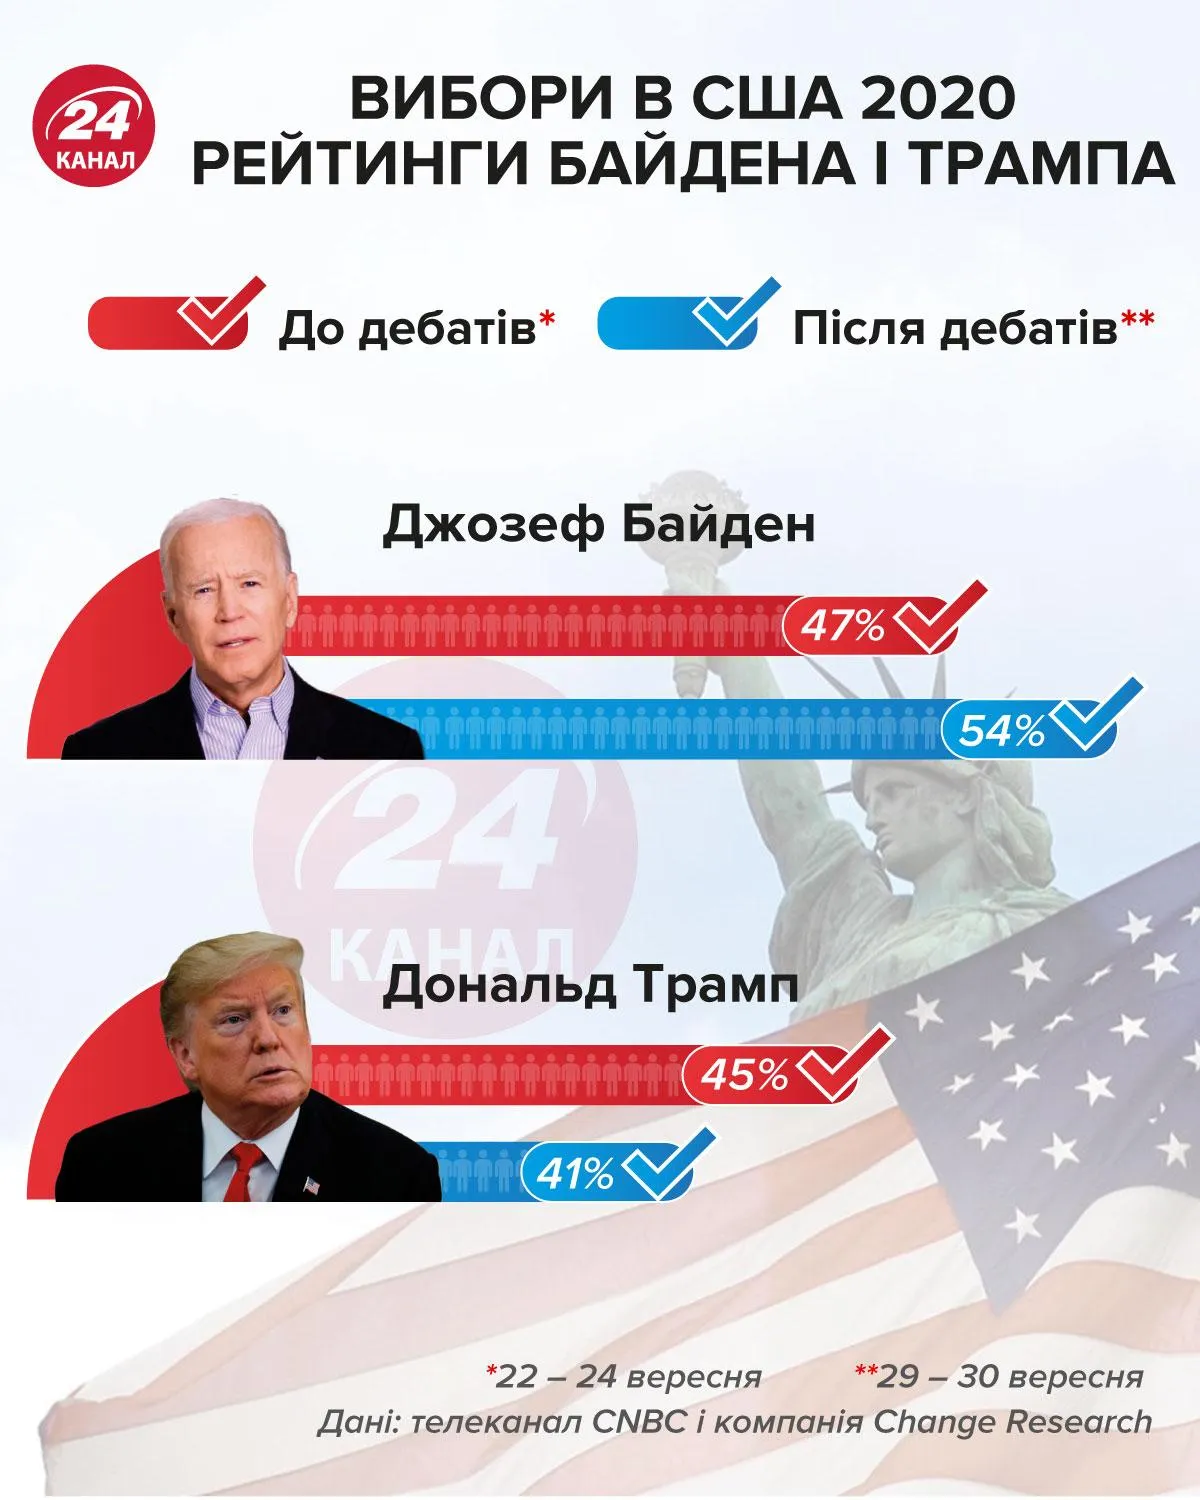 Вибори в США 2020 рейтинги кандидатів інфографіка 24 канал